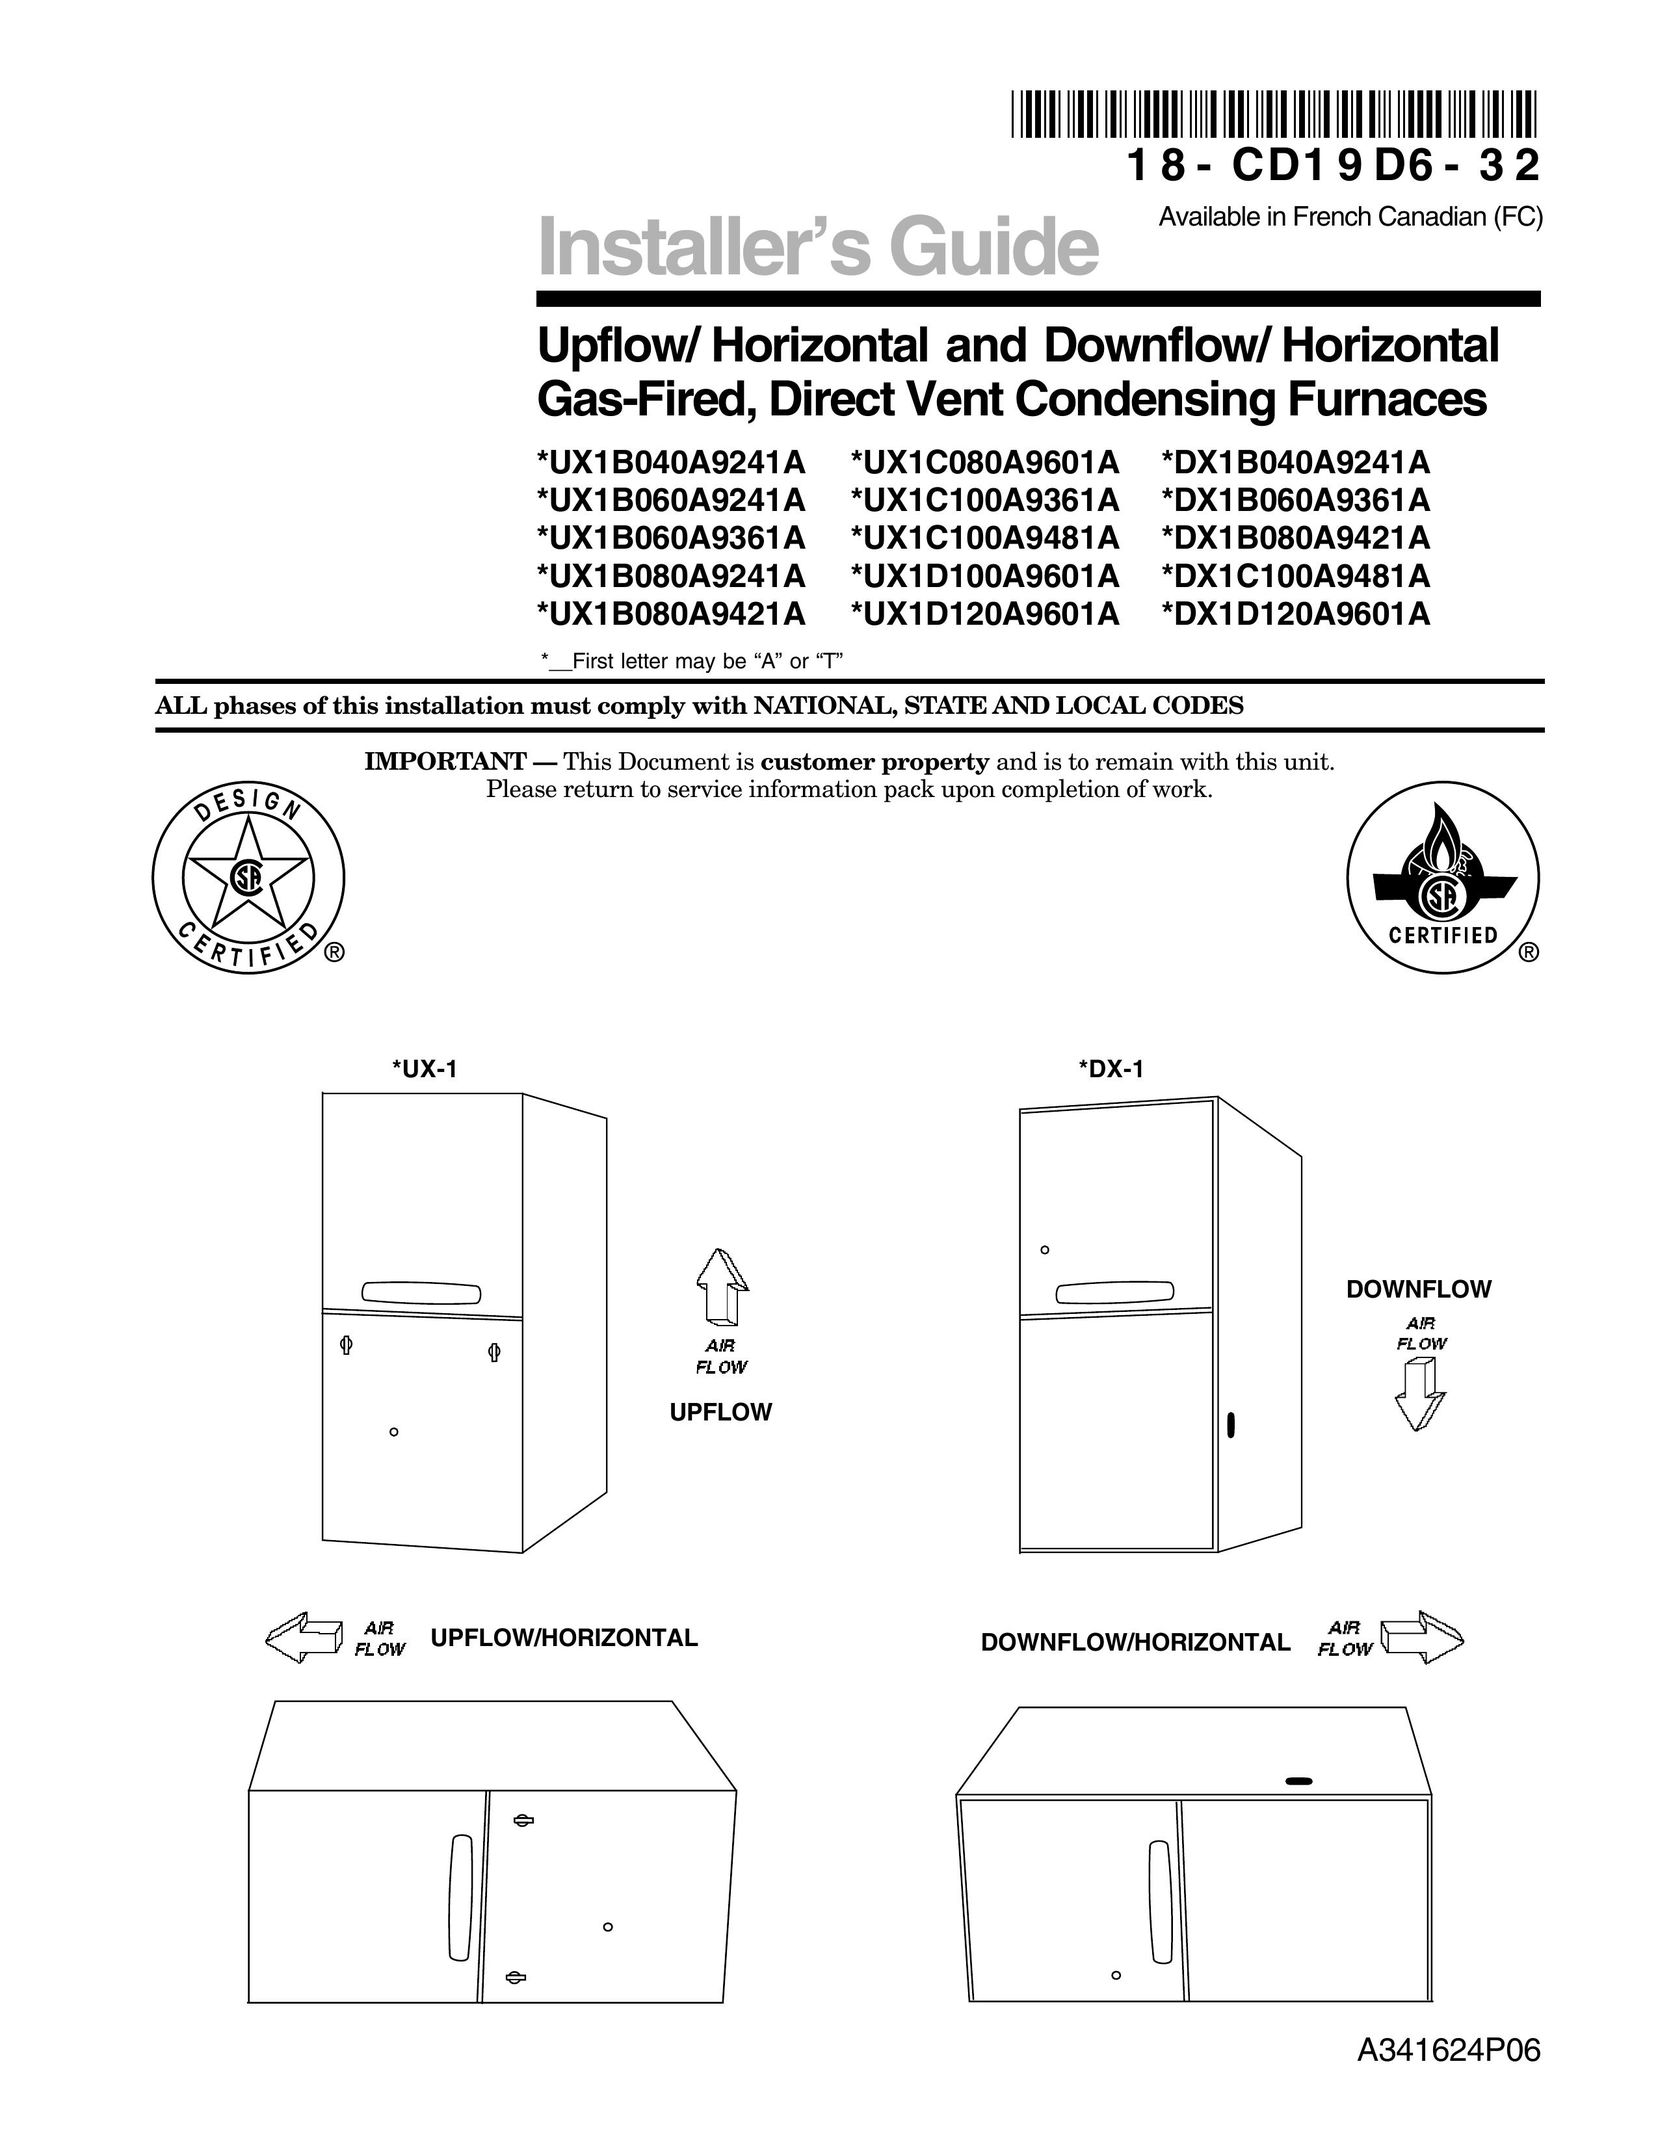 Trane UX1C080A9601A Furnace User Manual